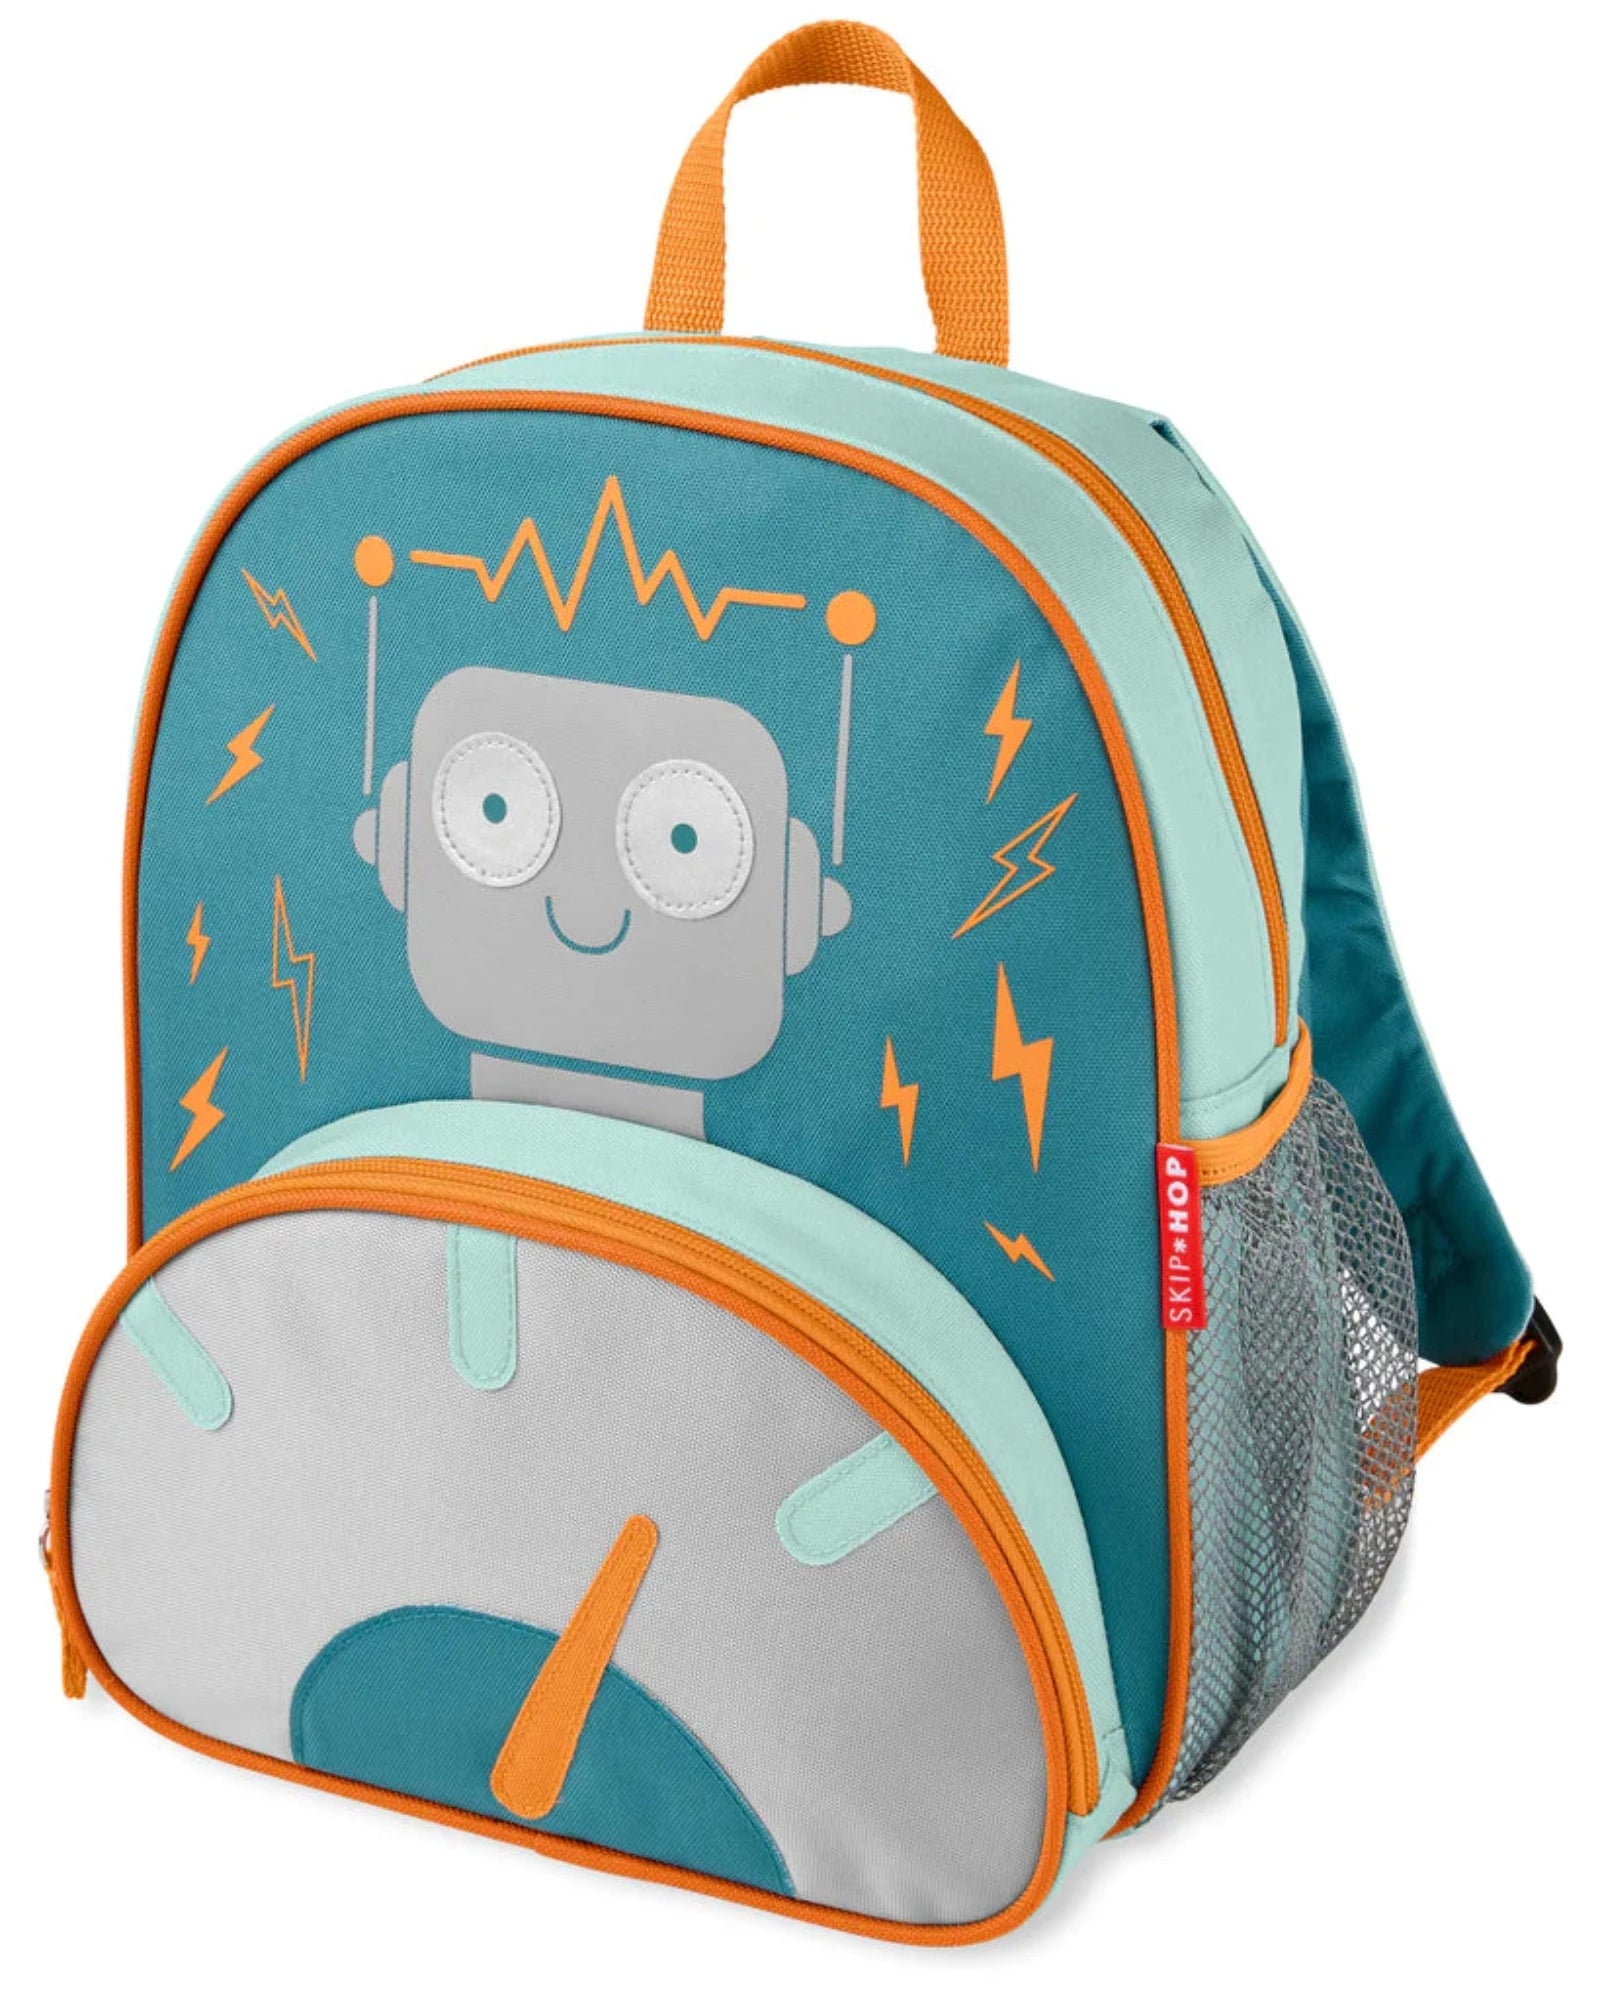 Skip Hop Spark Style Little Kid Backpack - Robot